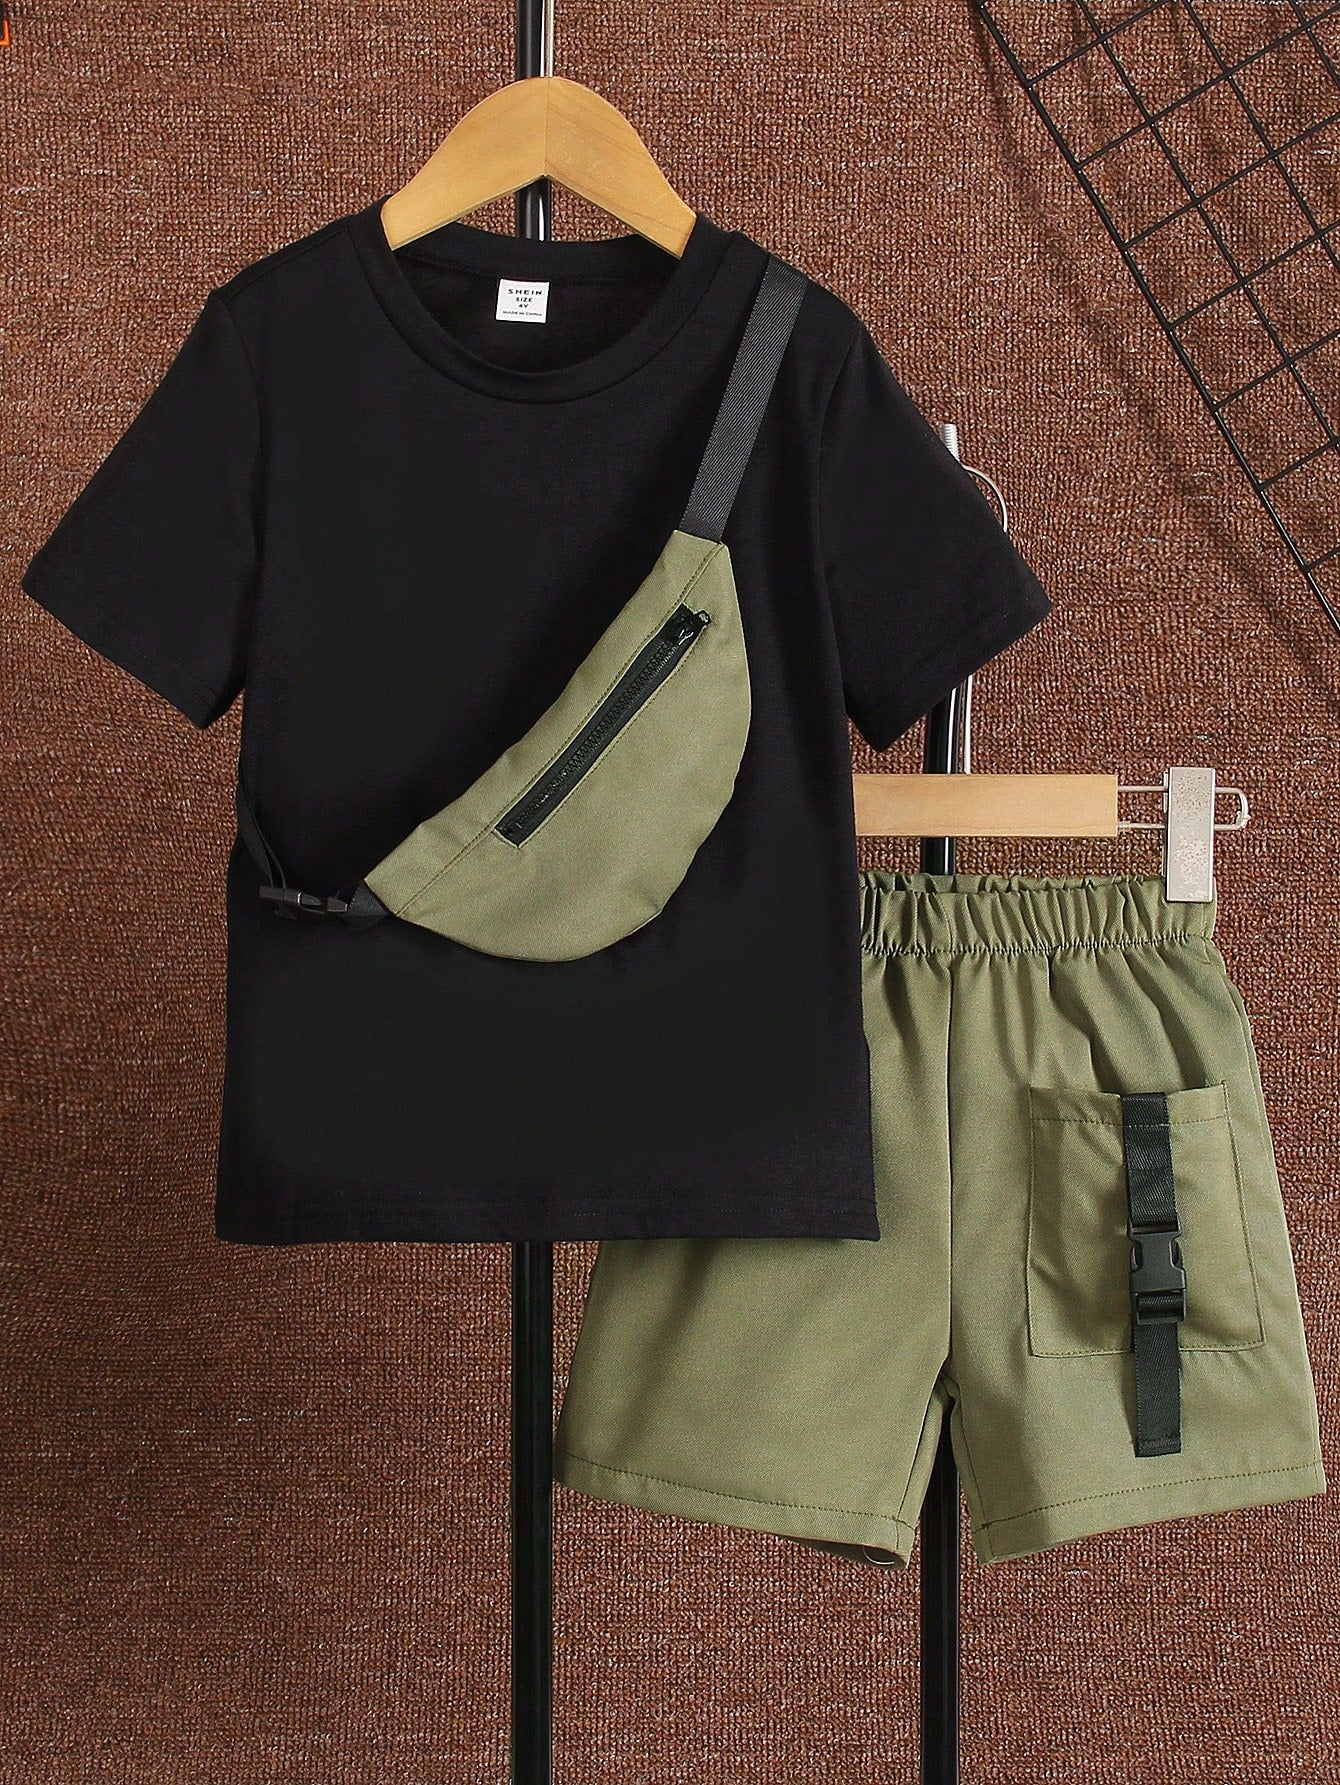 طقم لقميص صبي شبشبي سوداء برقبة دائرية و خمسة شورتات تعملية بحقيبة، مناسبة للصيف